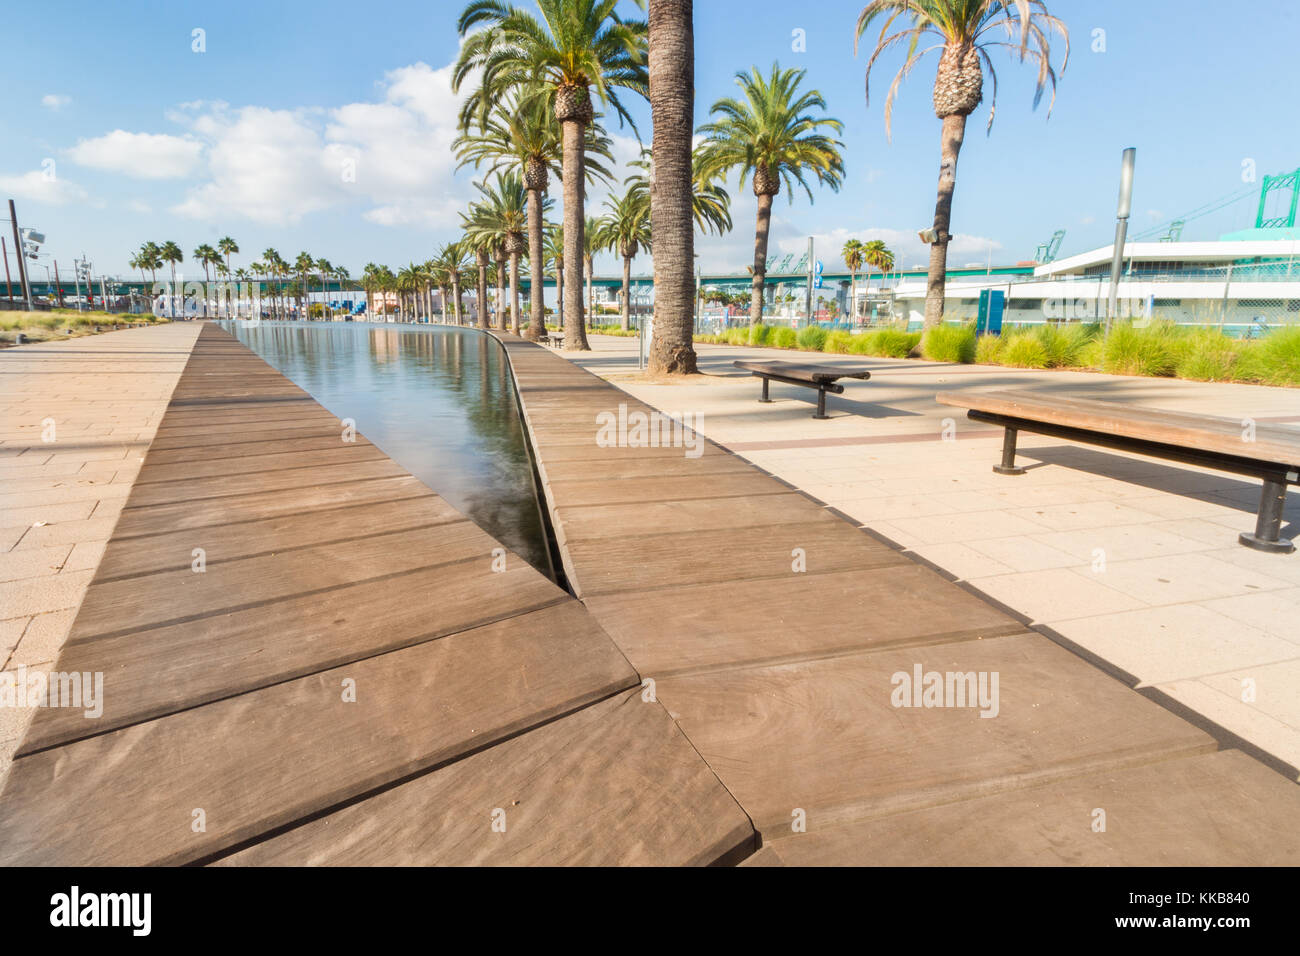 San Pedro, Los Angeles, Californie, USA - 20 septembre 2017 : la fanfare des fontaines à gateway plaza situé dans le port de los angeles. Banque D'Images